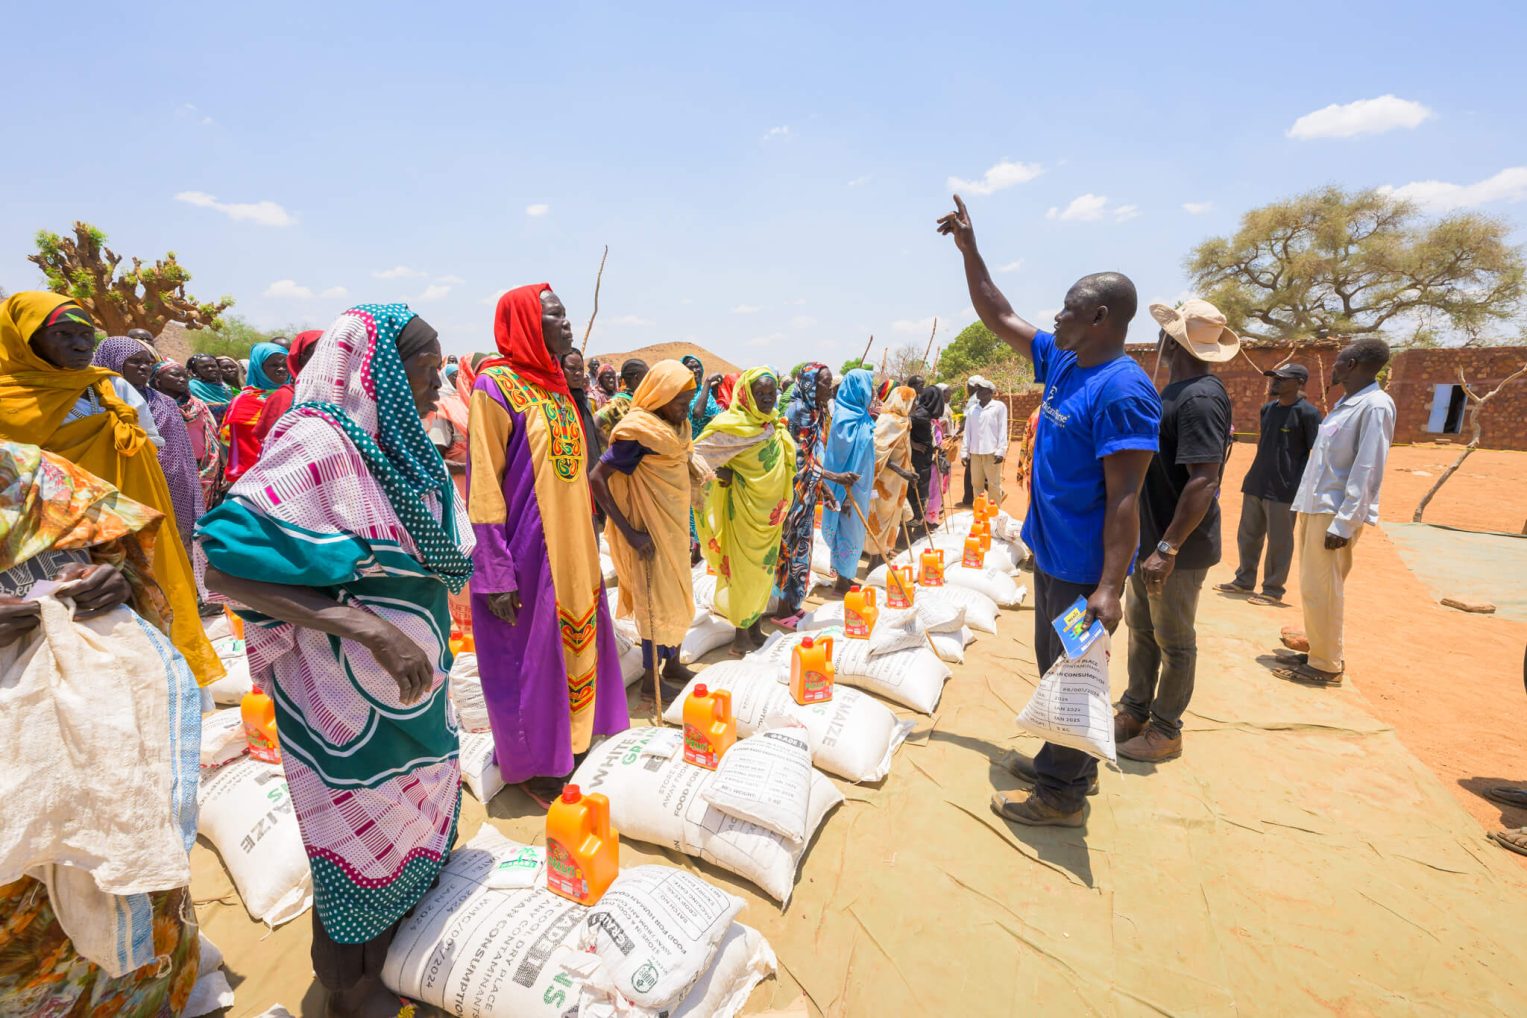 La comida esencial ayuda a las familias desplazadas en la región remota de Kordofan en una temporada de escasez.